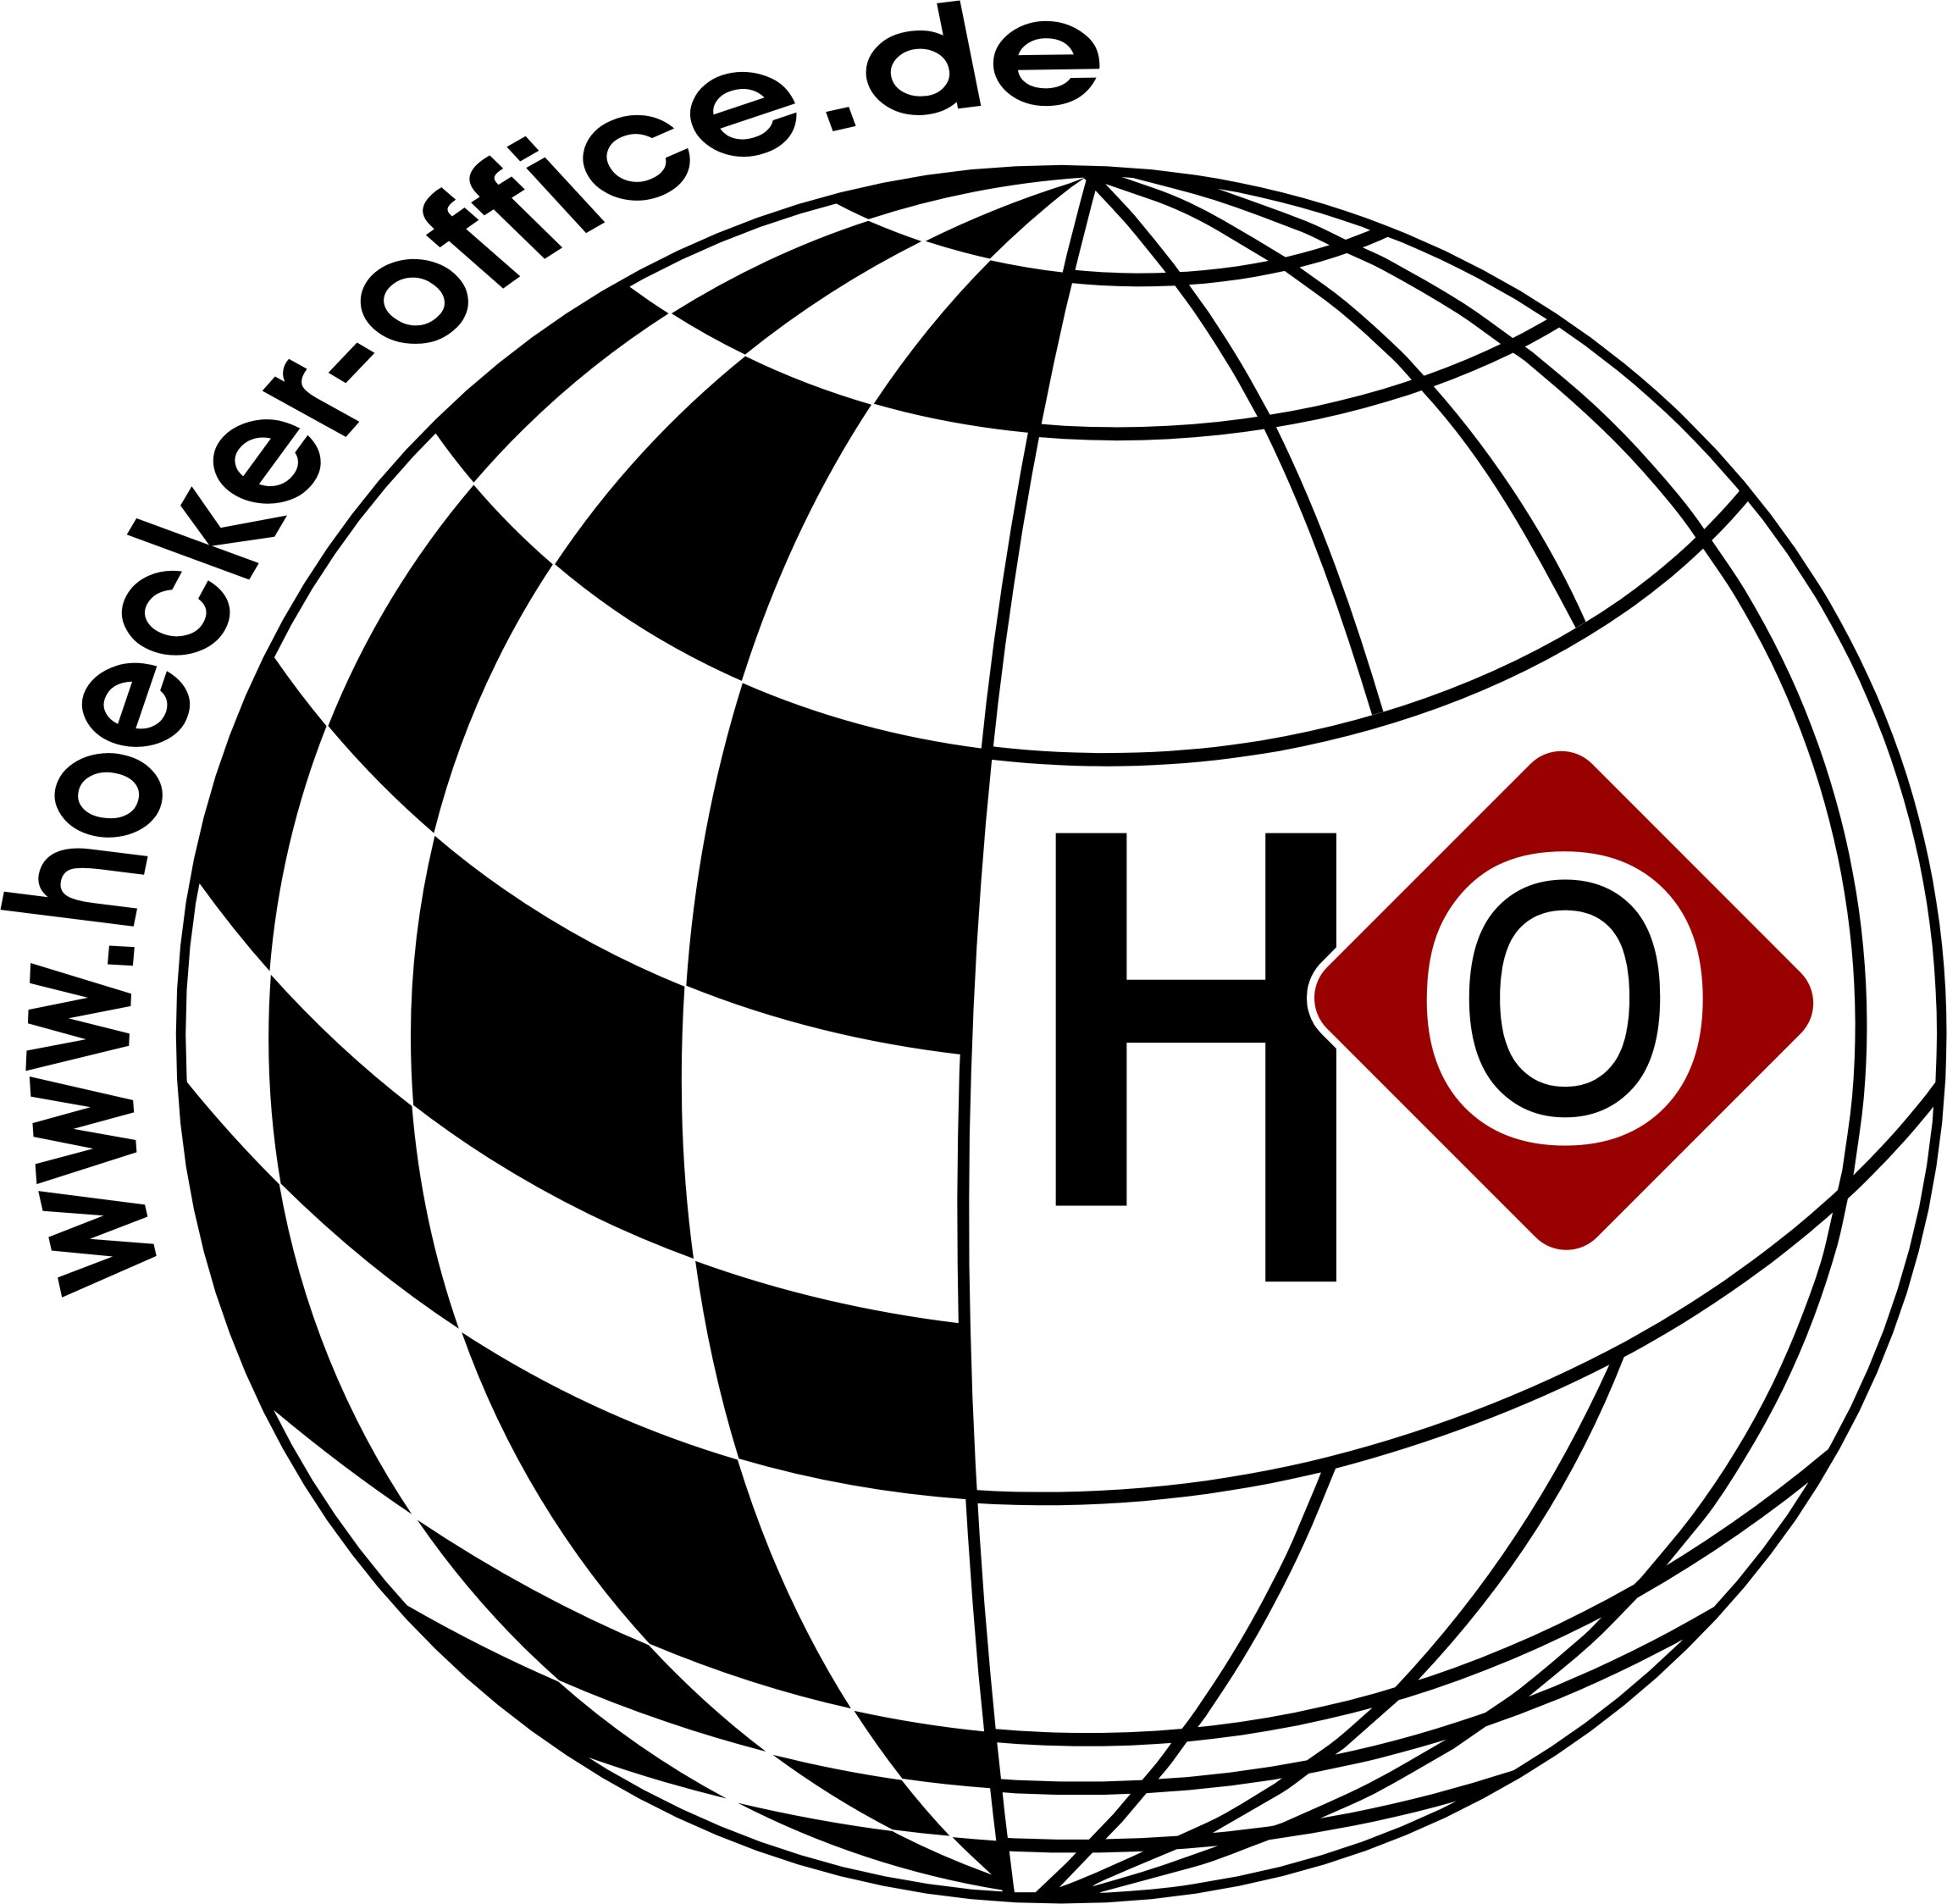 Hoecker Office